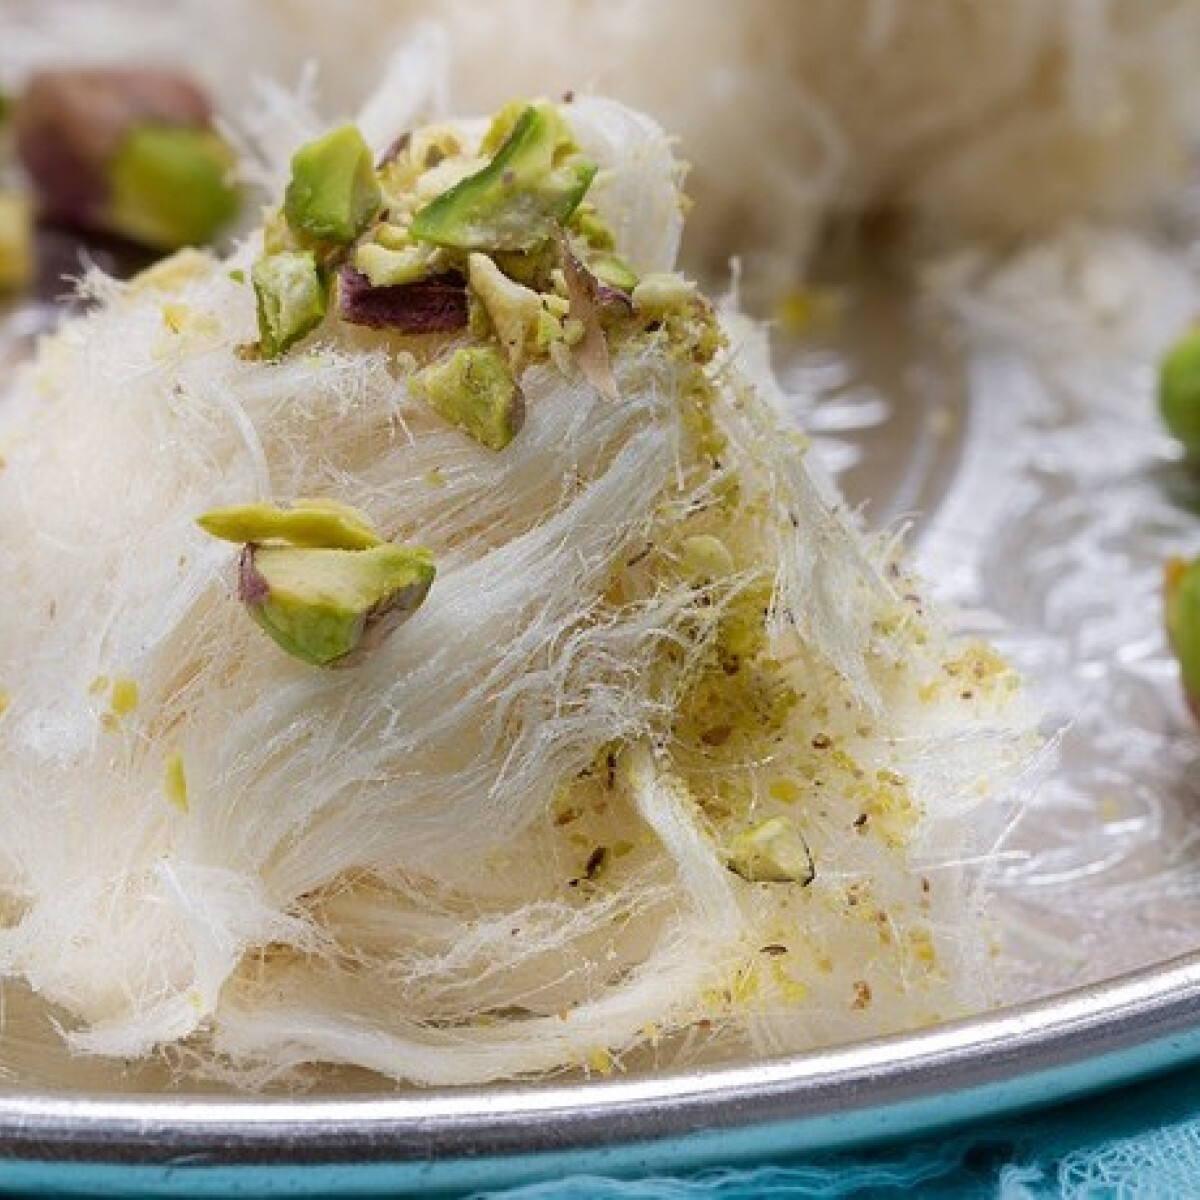 Pashmak, a lágy, gyapjúfonalszerű perzsa édesség, amit tündér-vattacukornak is hívnak